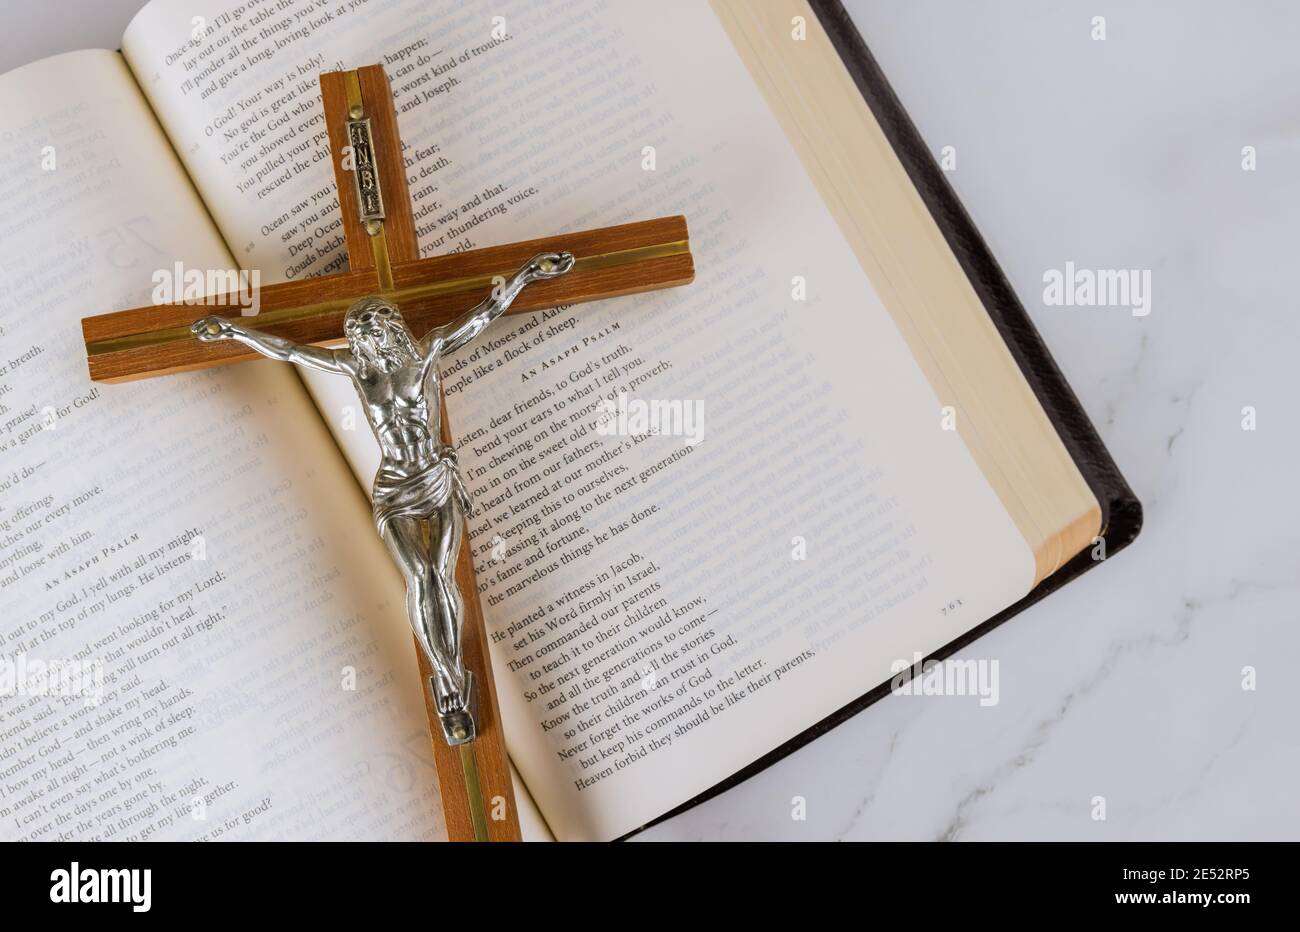 22 JANVIER 21 New York US 2021: Lire la littérature religieuse prendre la Sainte Bible avec la croix chrétienne de Jésus en chemin vers Dieu par la prière Banque D'Images